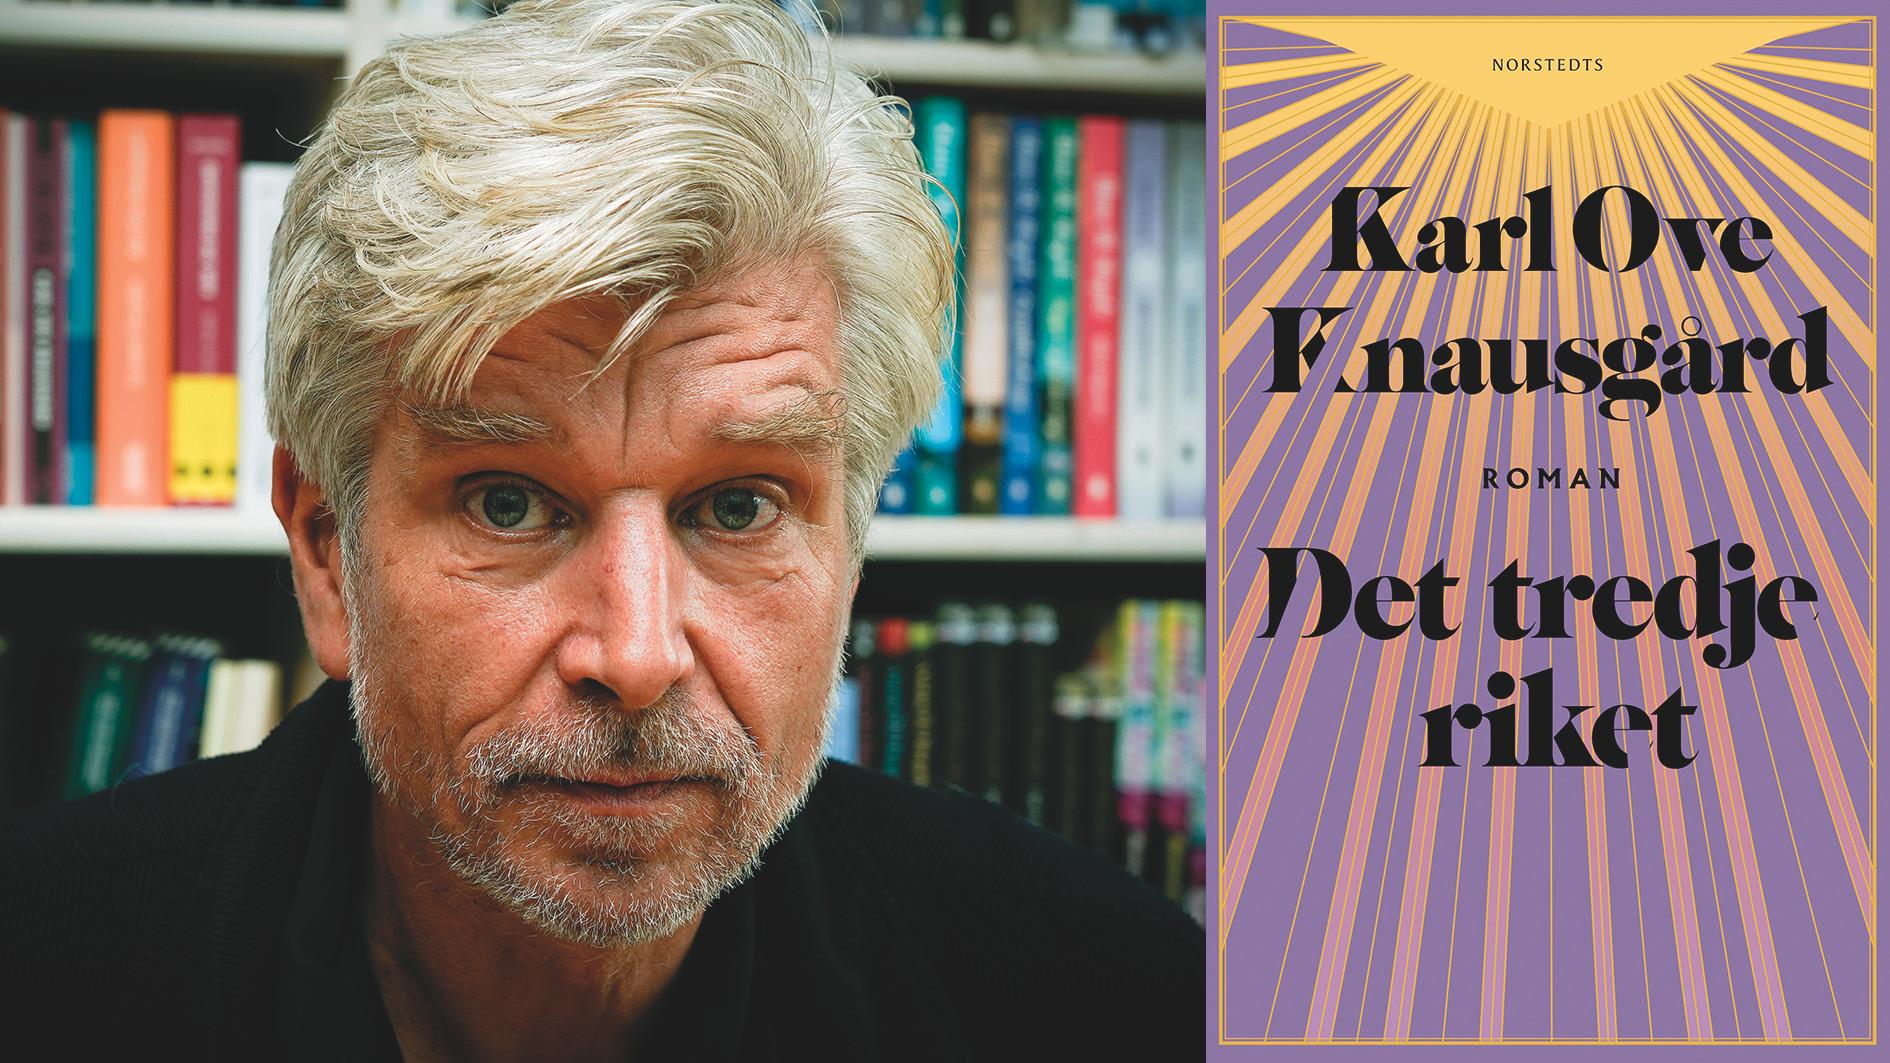 Karl Ove Knausgård (född 1968) fick sitt stora genombrott med romansviten ”Min kamp” (på svenska 2010–2013) och nu utkommer den sista delen i trilogin som inleddes med ”Morgonstjärnan” 2020. ”Medalj för uthållighet, men knappast för litterär smak” skriver Carl-Michael Edenborg till de läsare som läst de två första delarna och längtar efter den tredje.